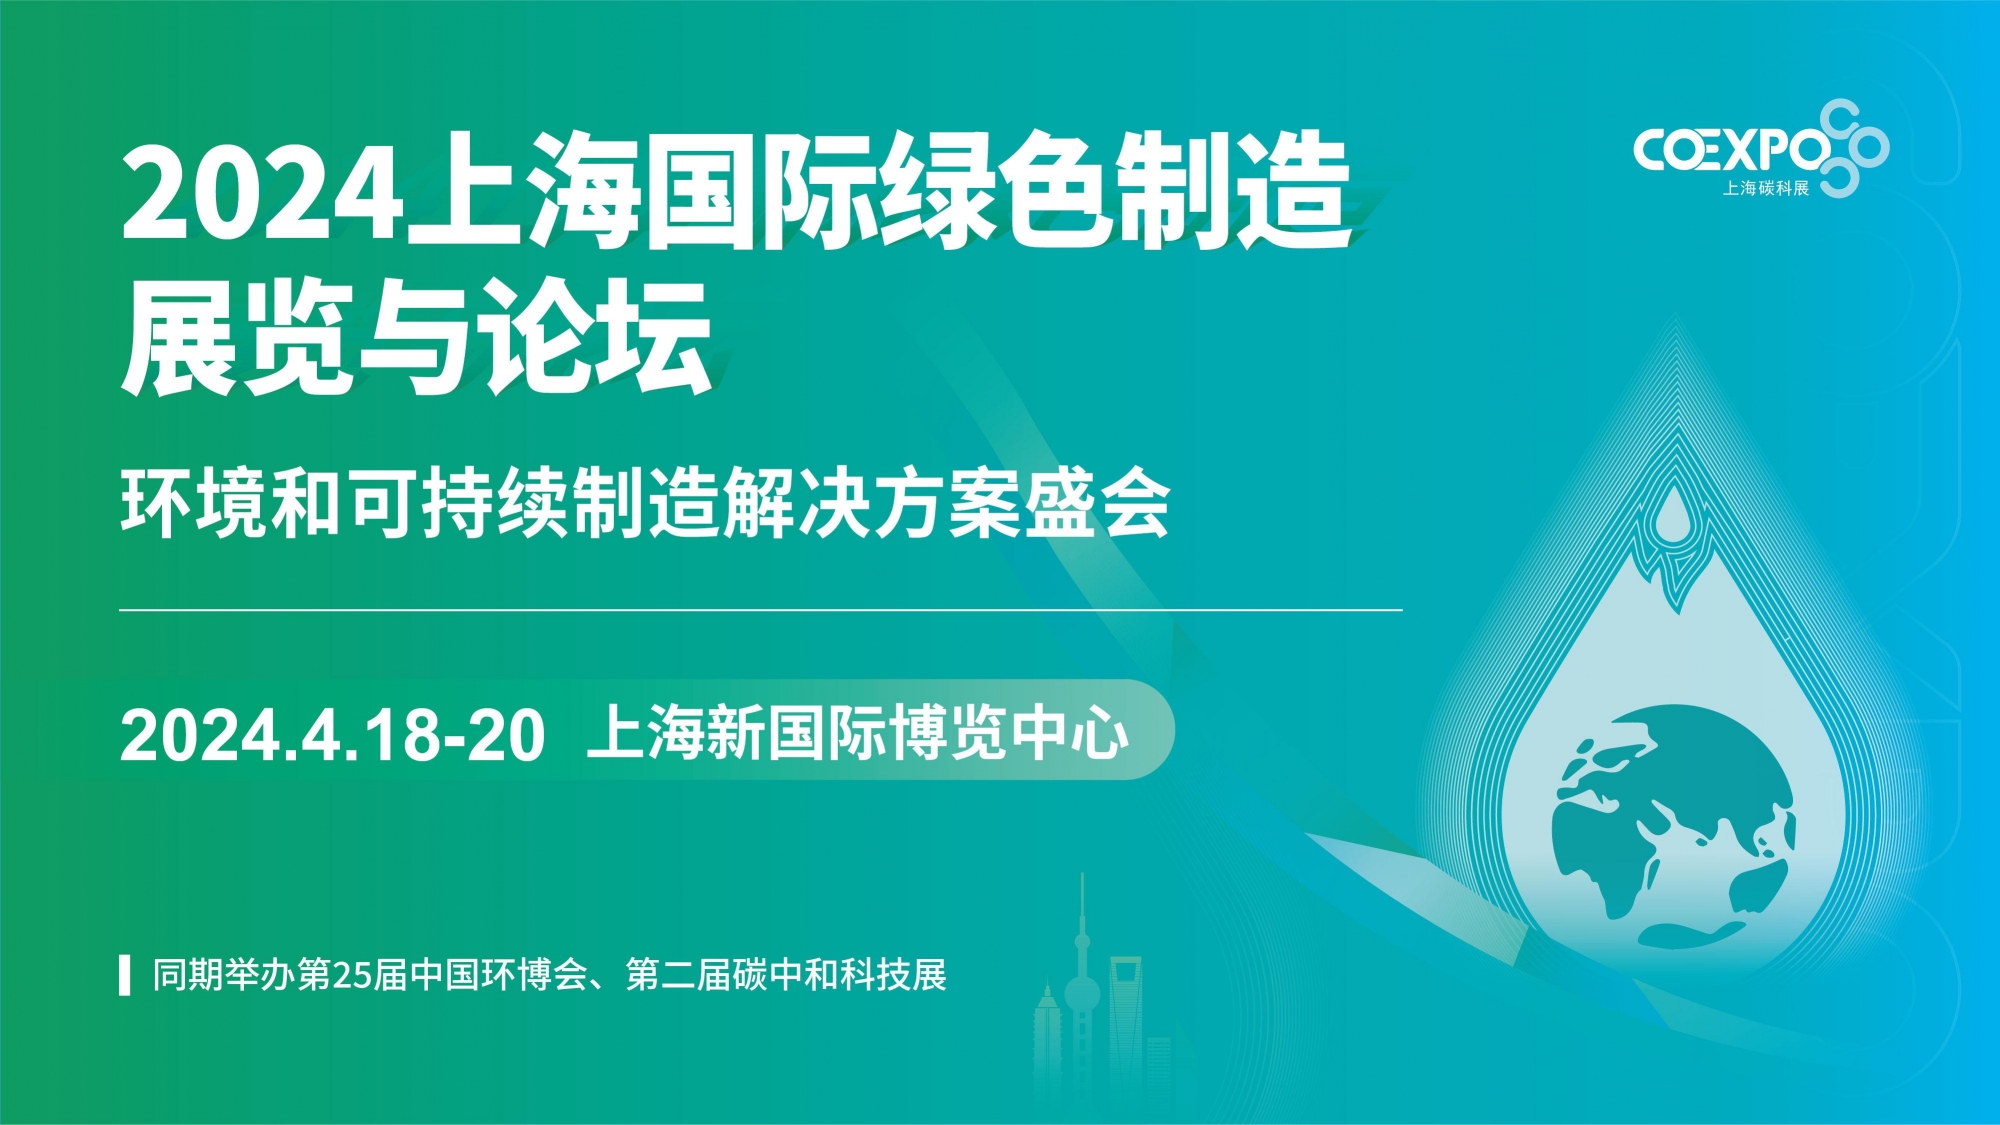 2024上海国际绿色制造展览与论坛招展PPT1019 - 副本_页面_01